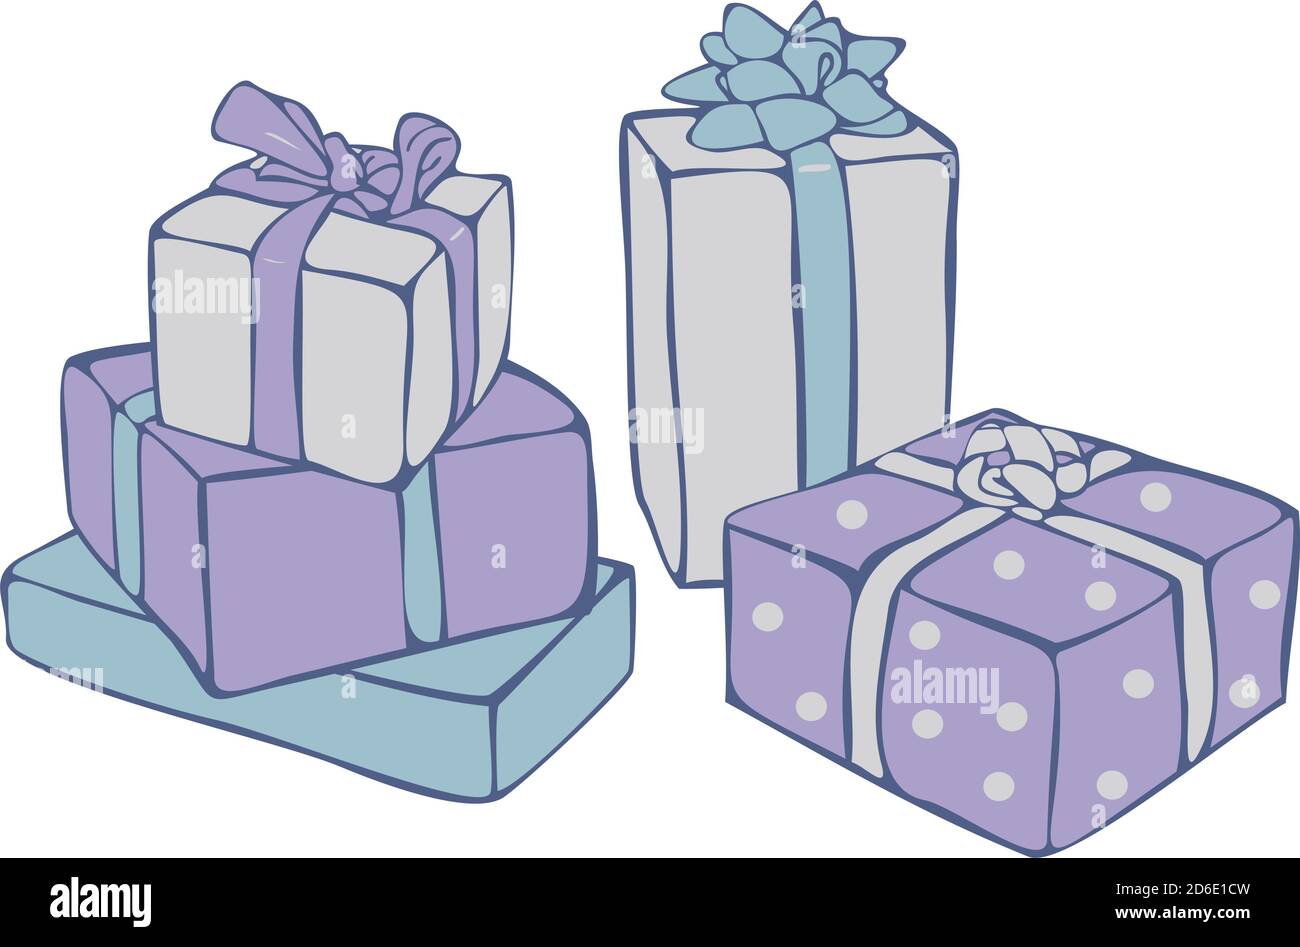 Vektor Stillleben mit bunten Geschenk-Boxen isoliert auf weißem Hintergrund. Gitfs Konzept für das neue Jahr. Stock Vektor